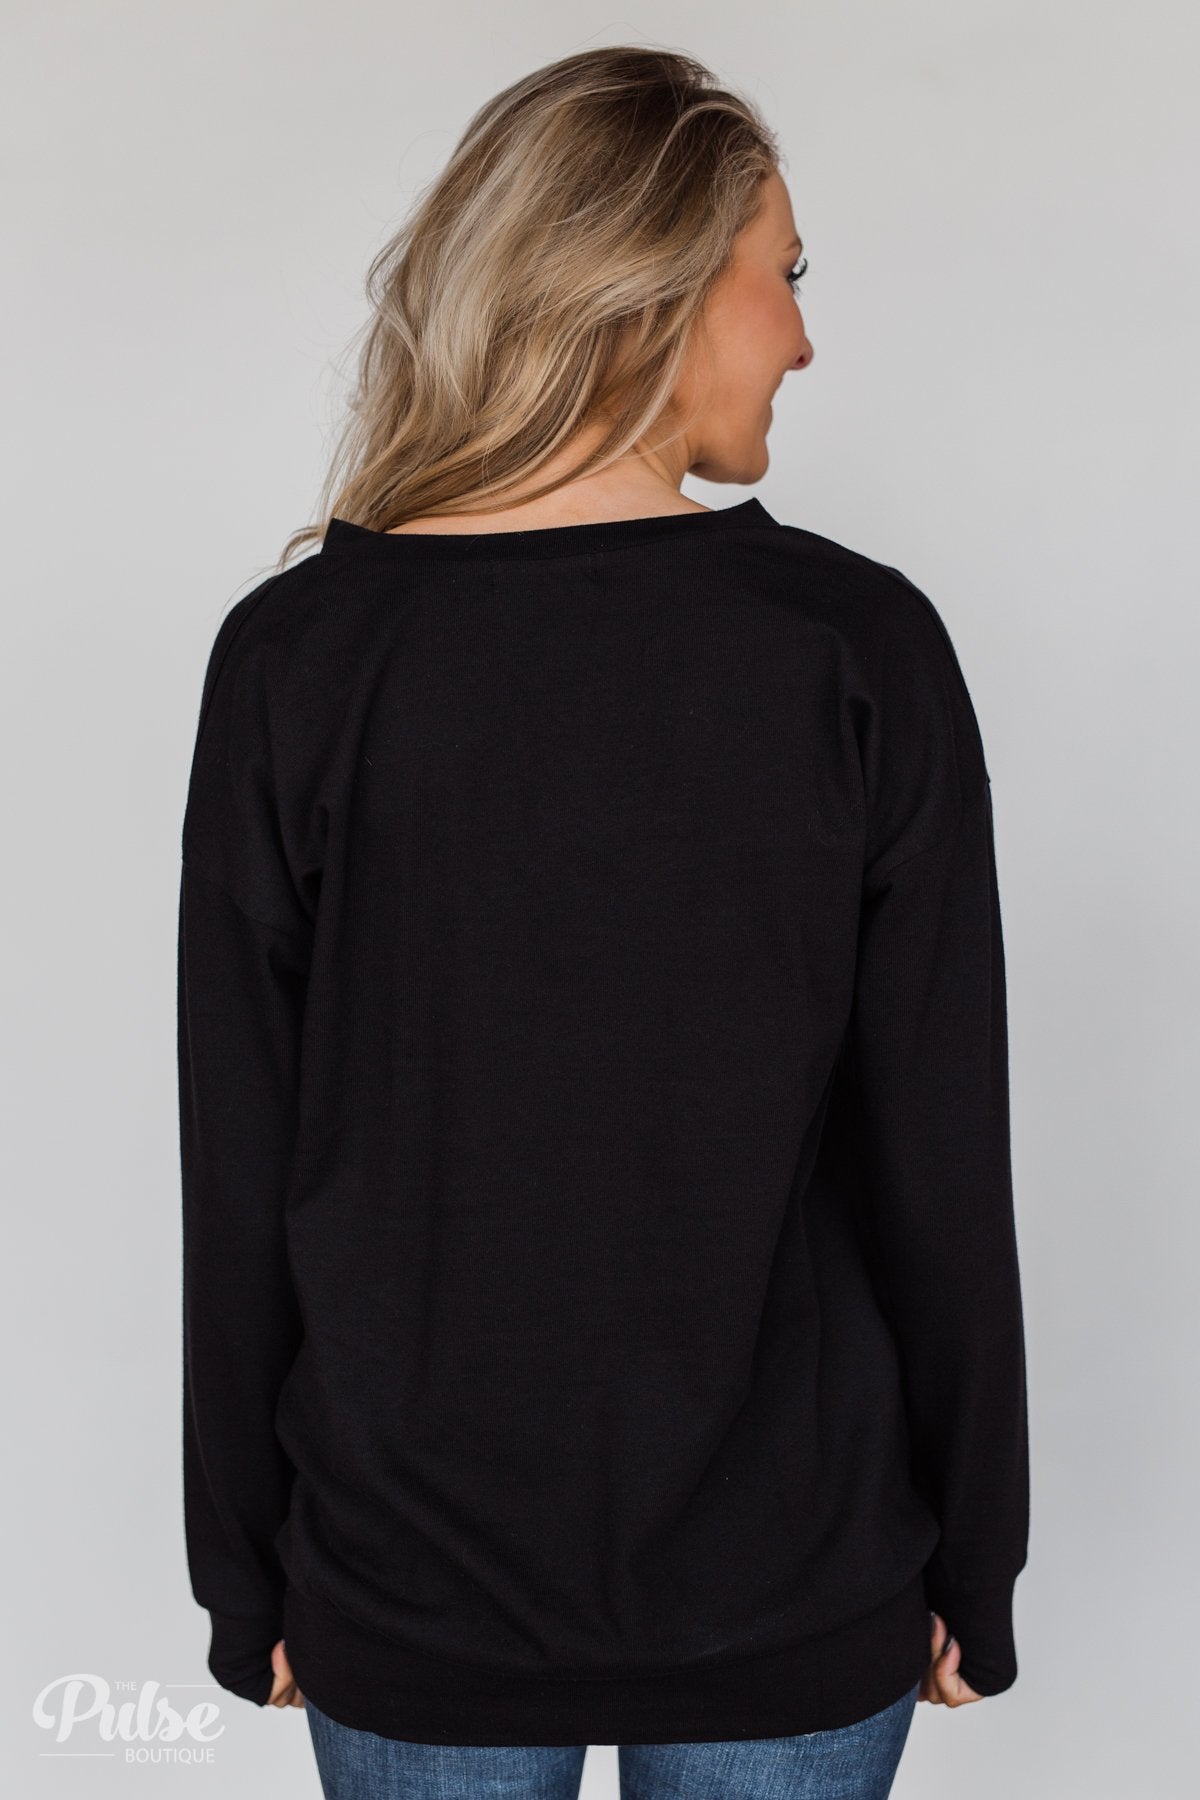 Color Pop Sweatshirt- Solid Black